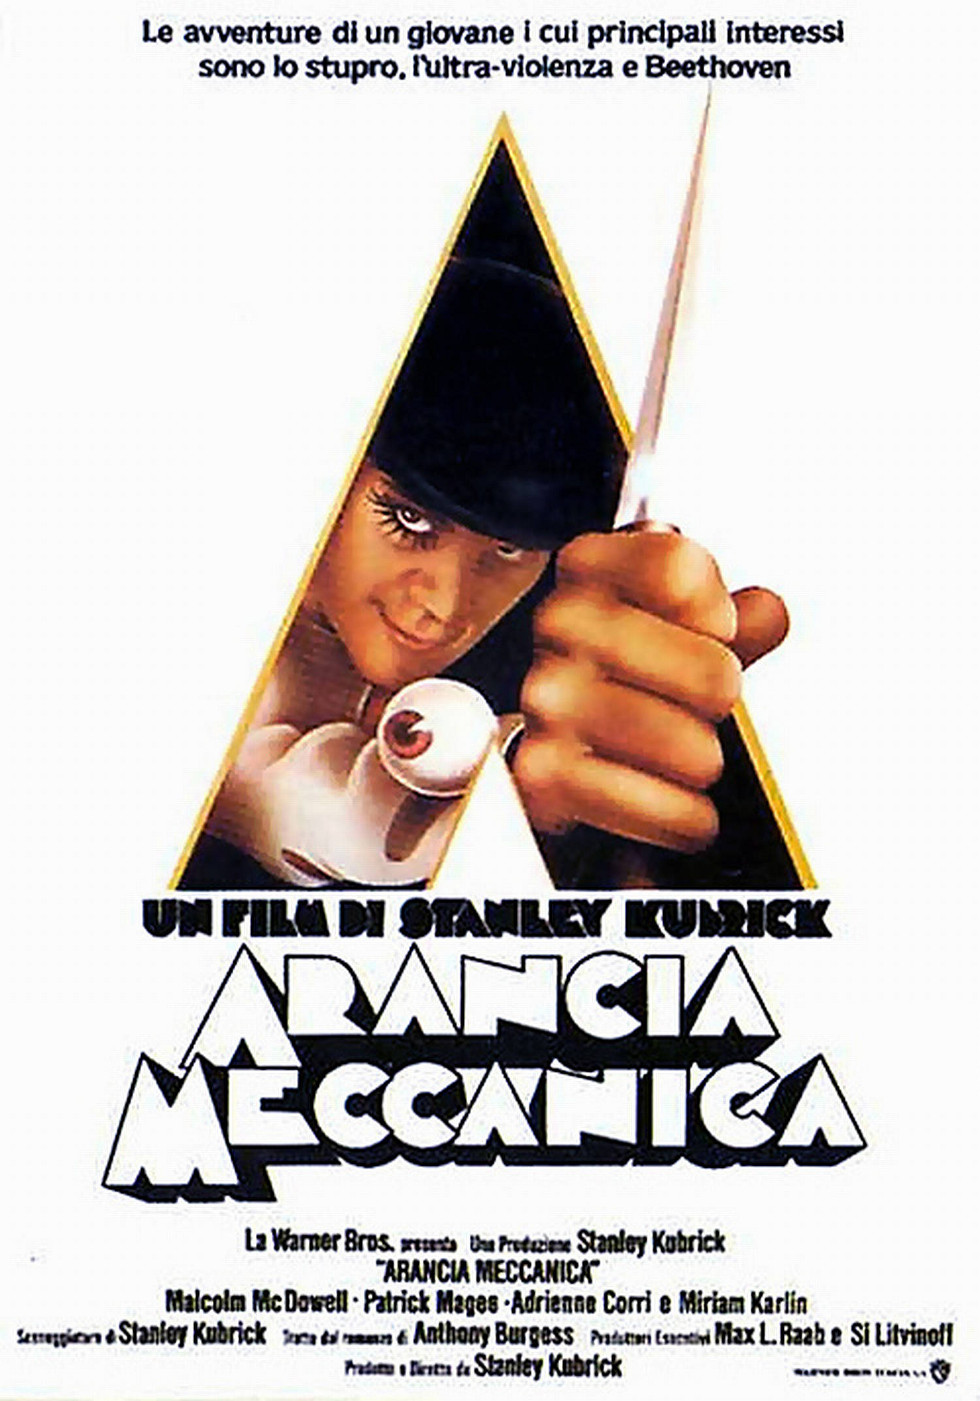 il poster ufficiale del film mostra alex nel suo costume da drugo - nerdface